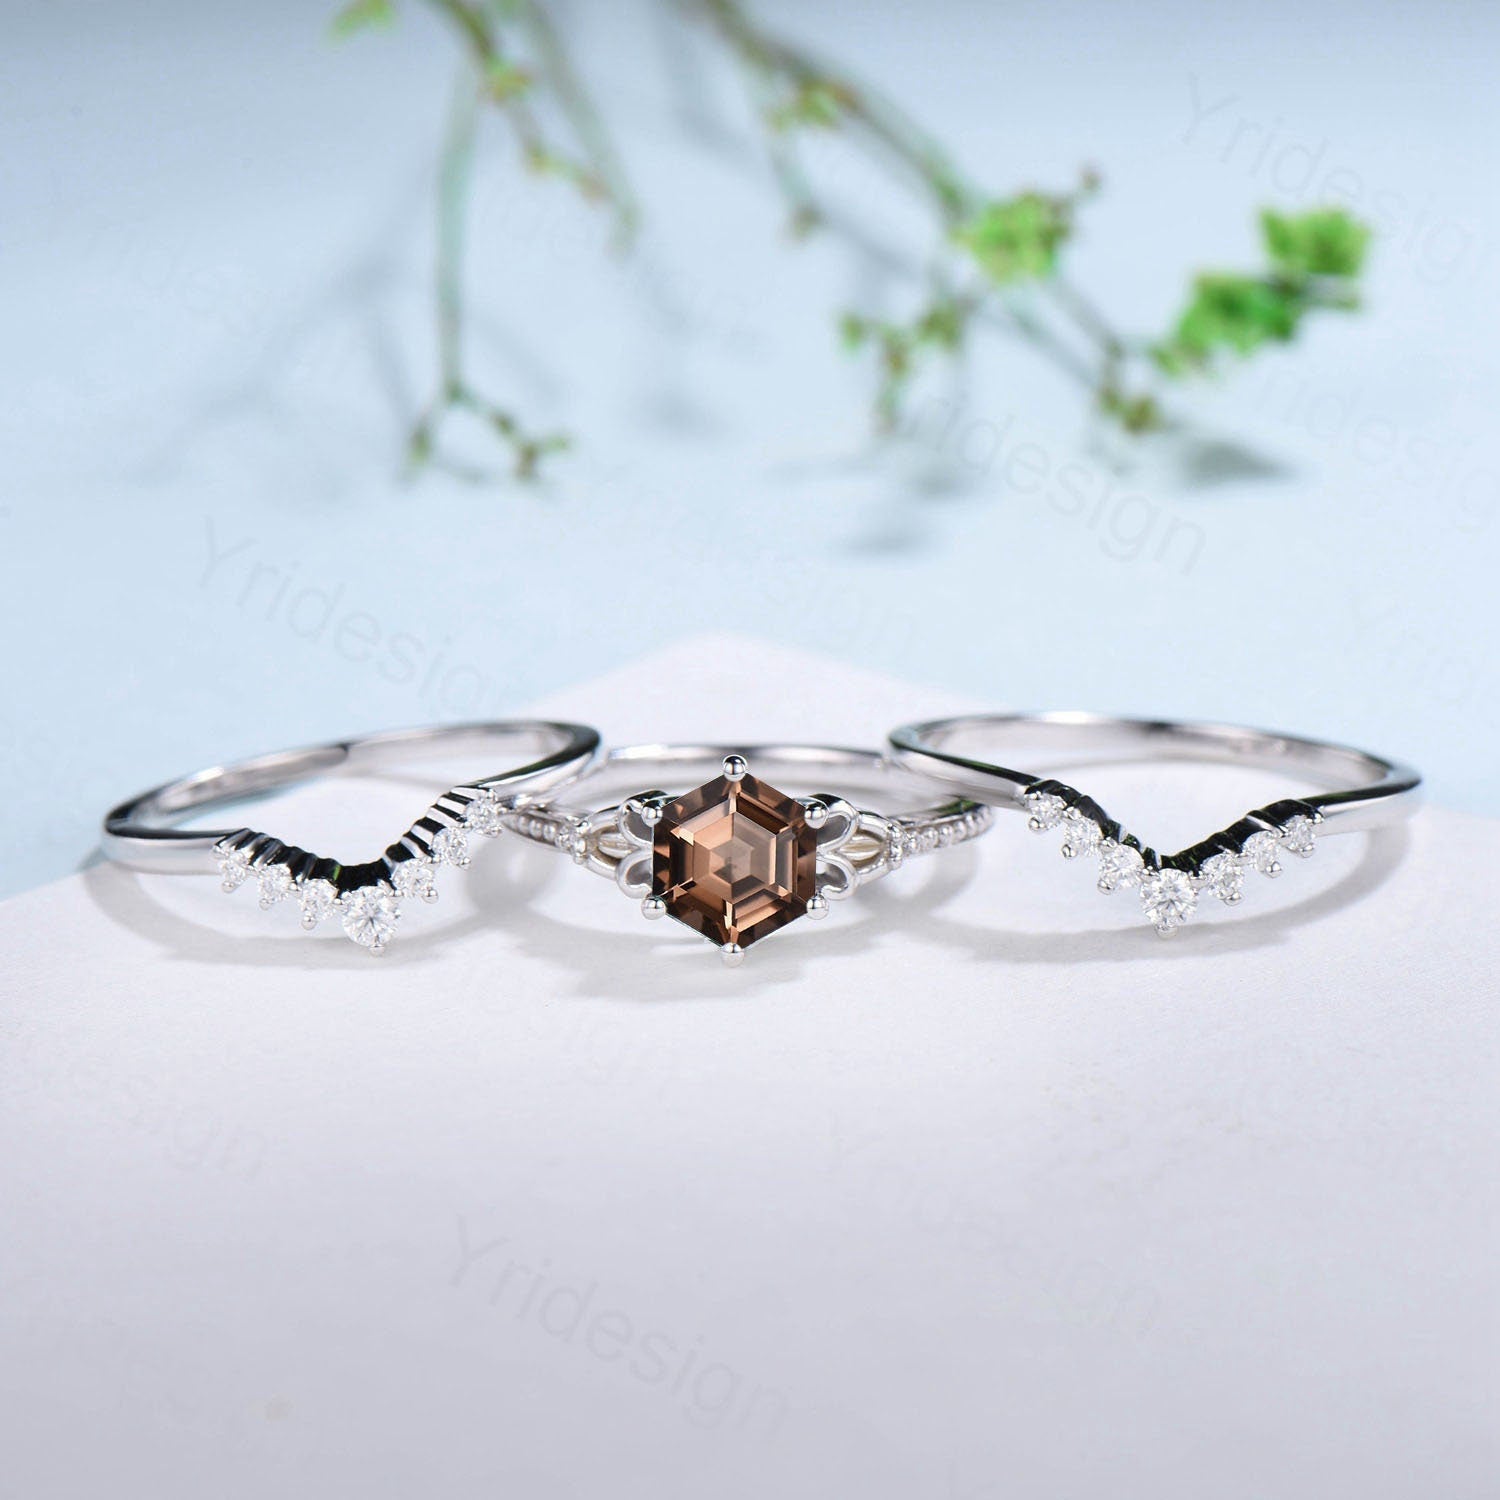 Vintage Smoky Quartz Ring Set 3pcs Unique Hexagon Brown Quartz Engagement Ring White Gold Milgrain Celtic Diamond Bridal Ring Set For Women - PENFINE